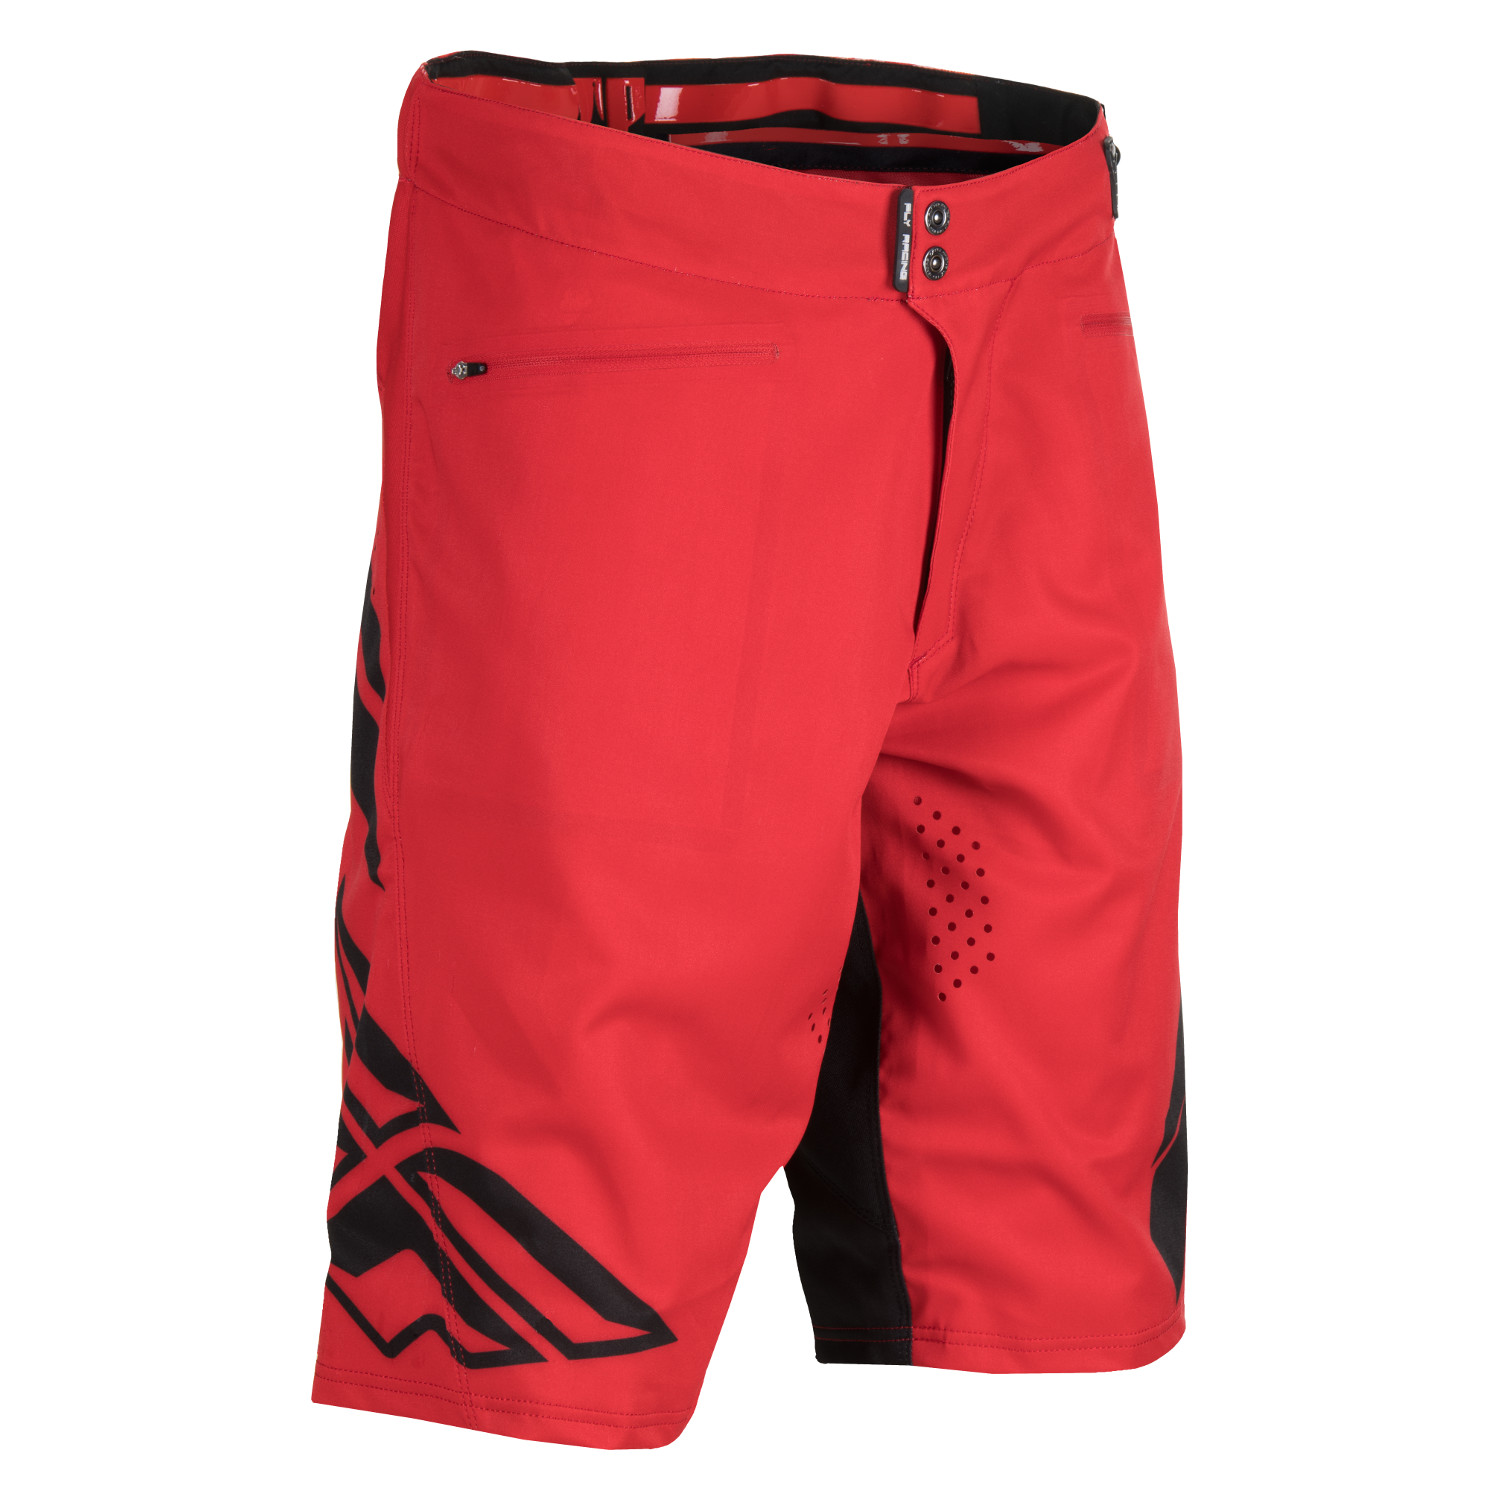 Fly Racing Shorts MTB Radium Shaun Palmer Edition - Red/Black